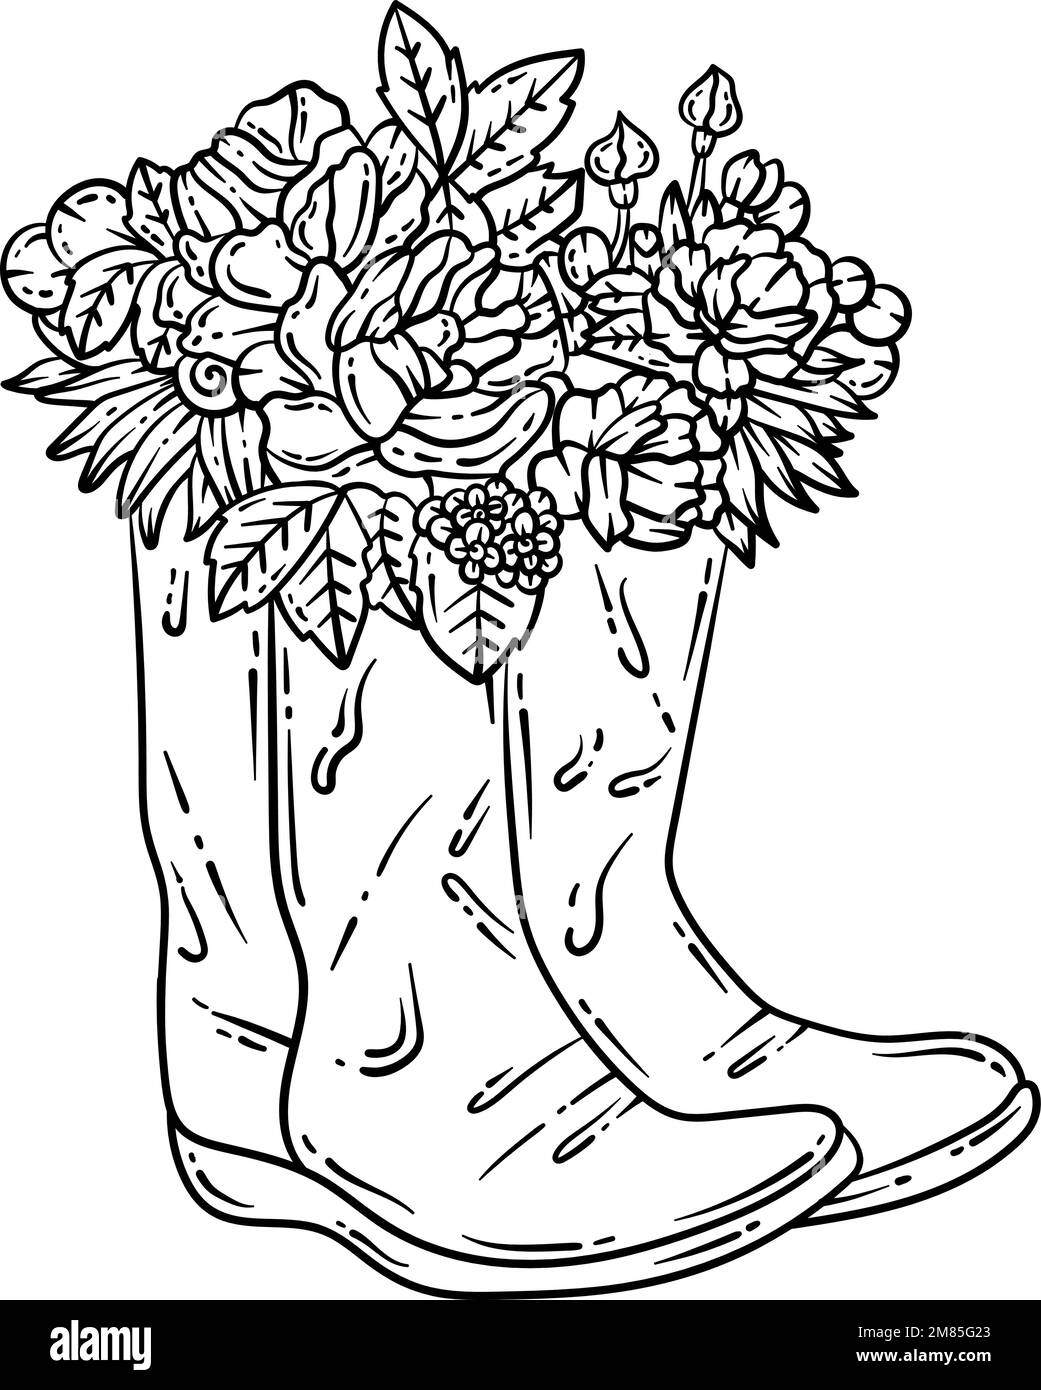 Botas de goma flor primavera adulto coloring page imagen vector de stock